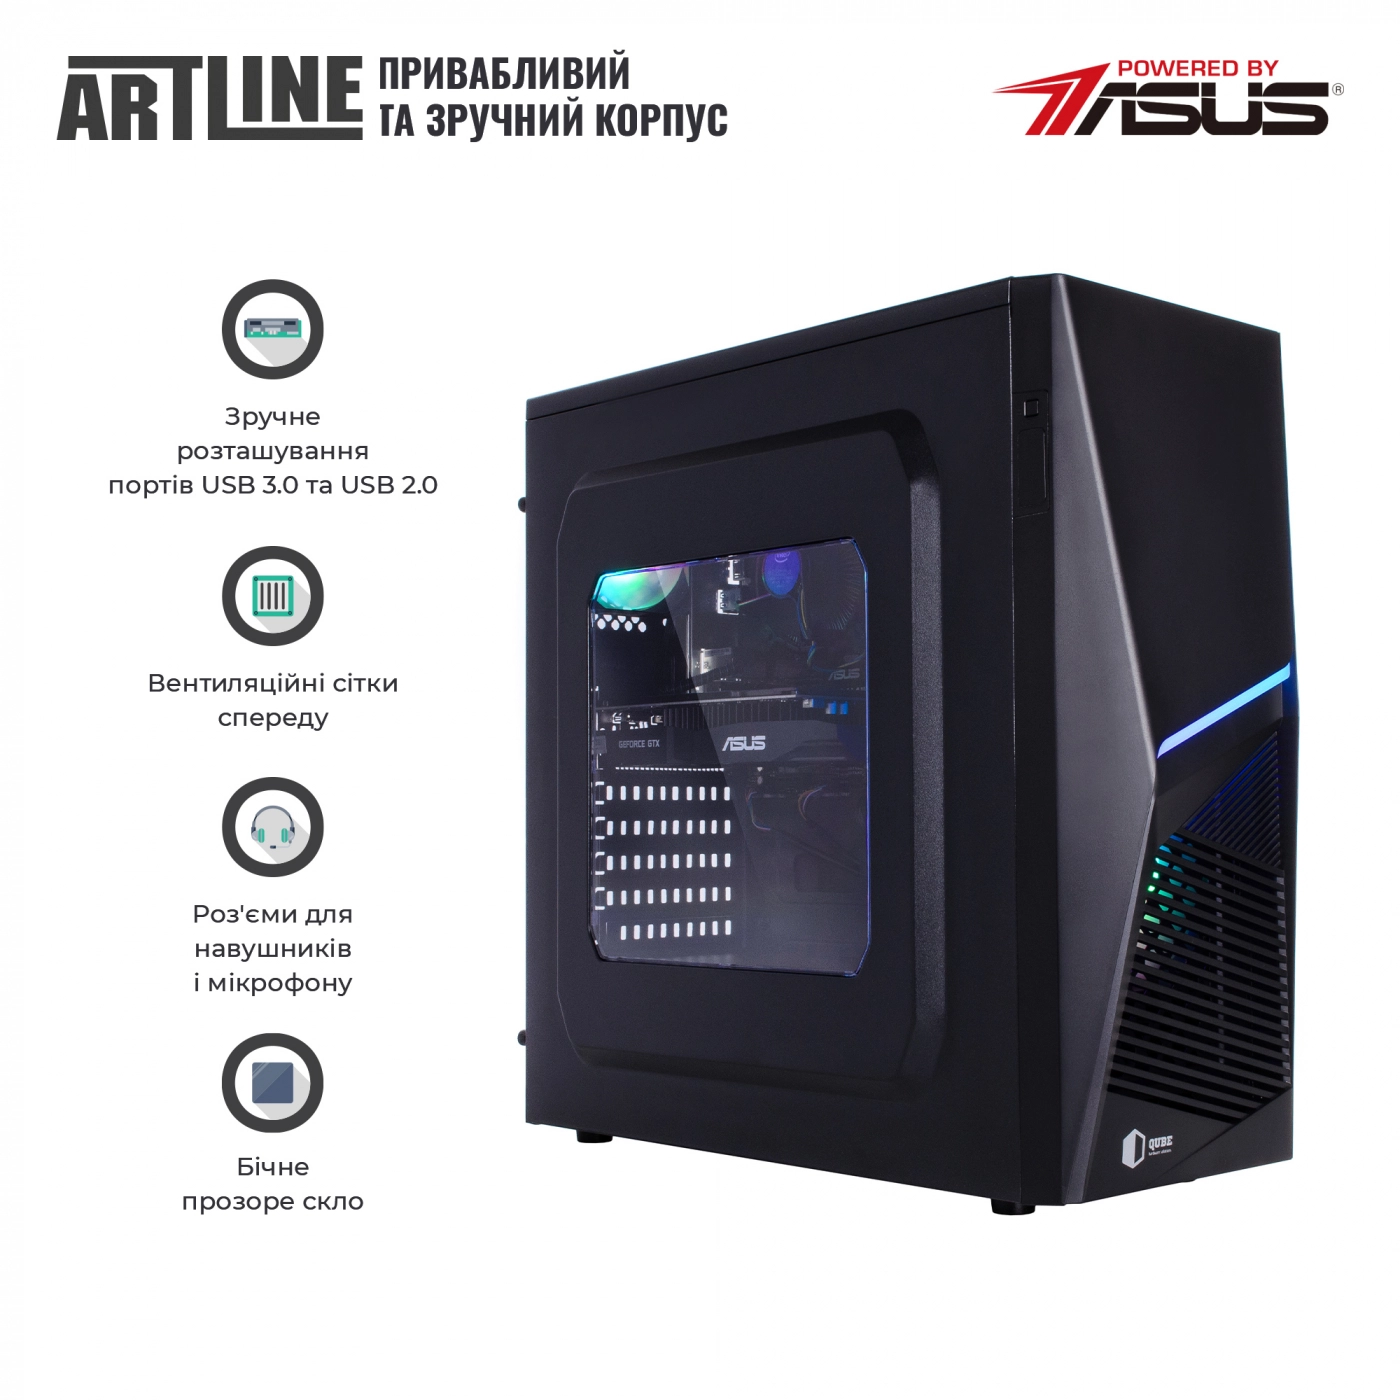 Купить Компьютер ARTLINE Gaming X43v21 - фото 5